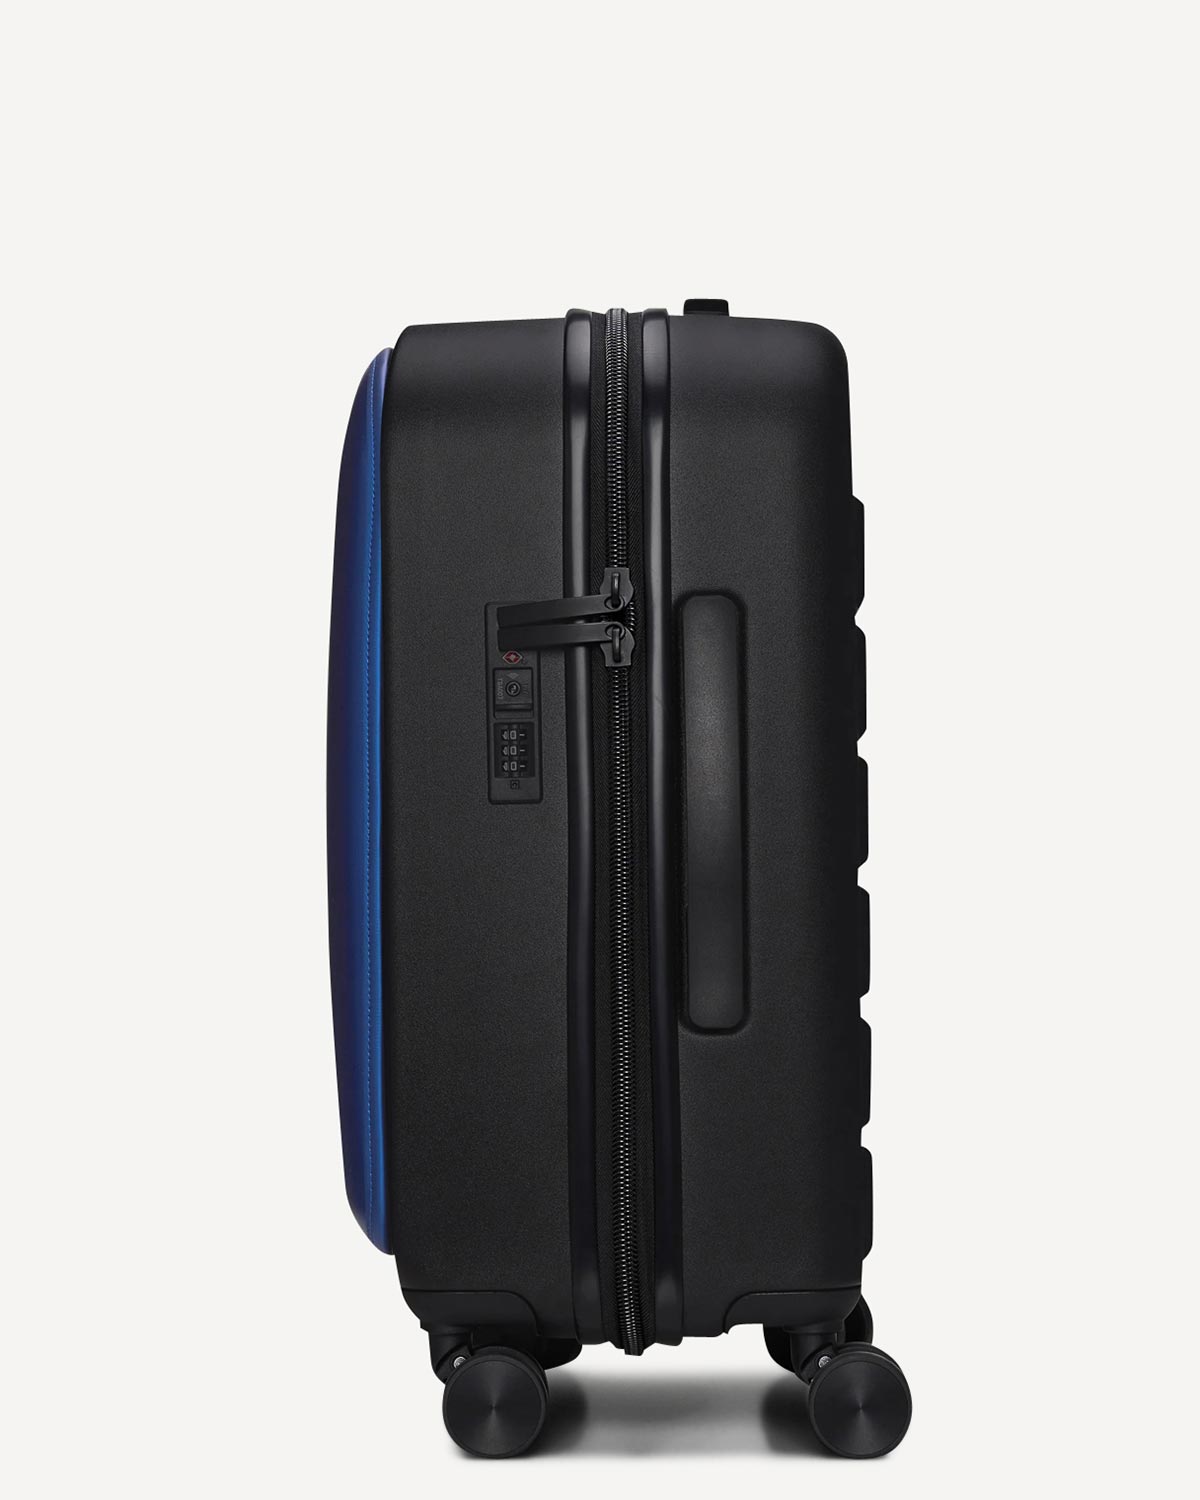 Άνδρας - Travel Luggage - Rains Μπλε